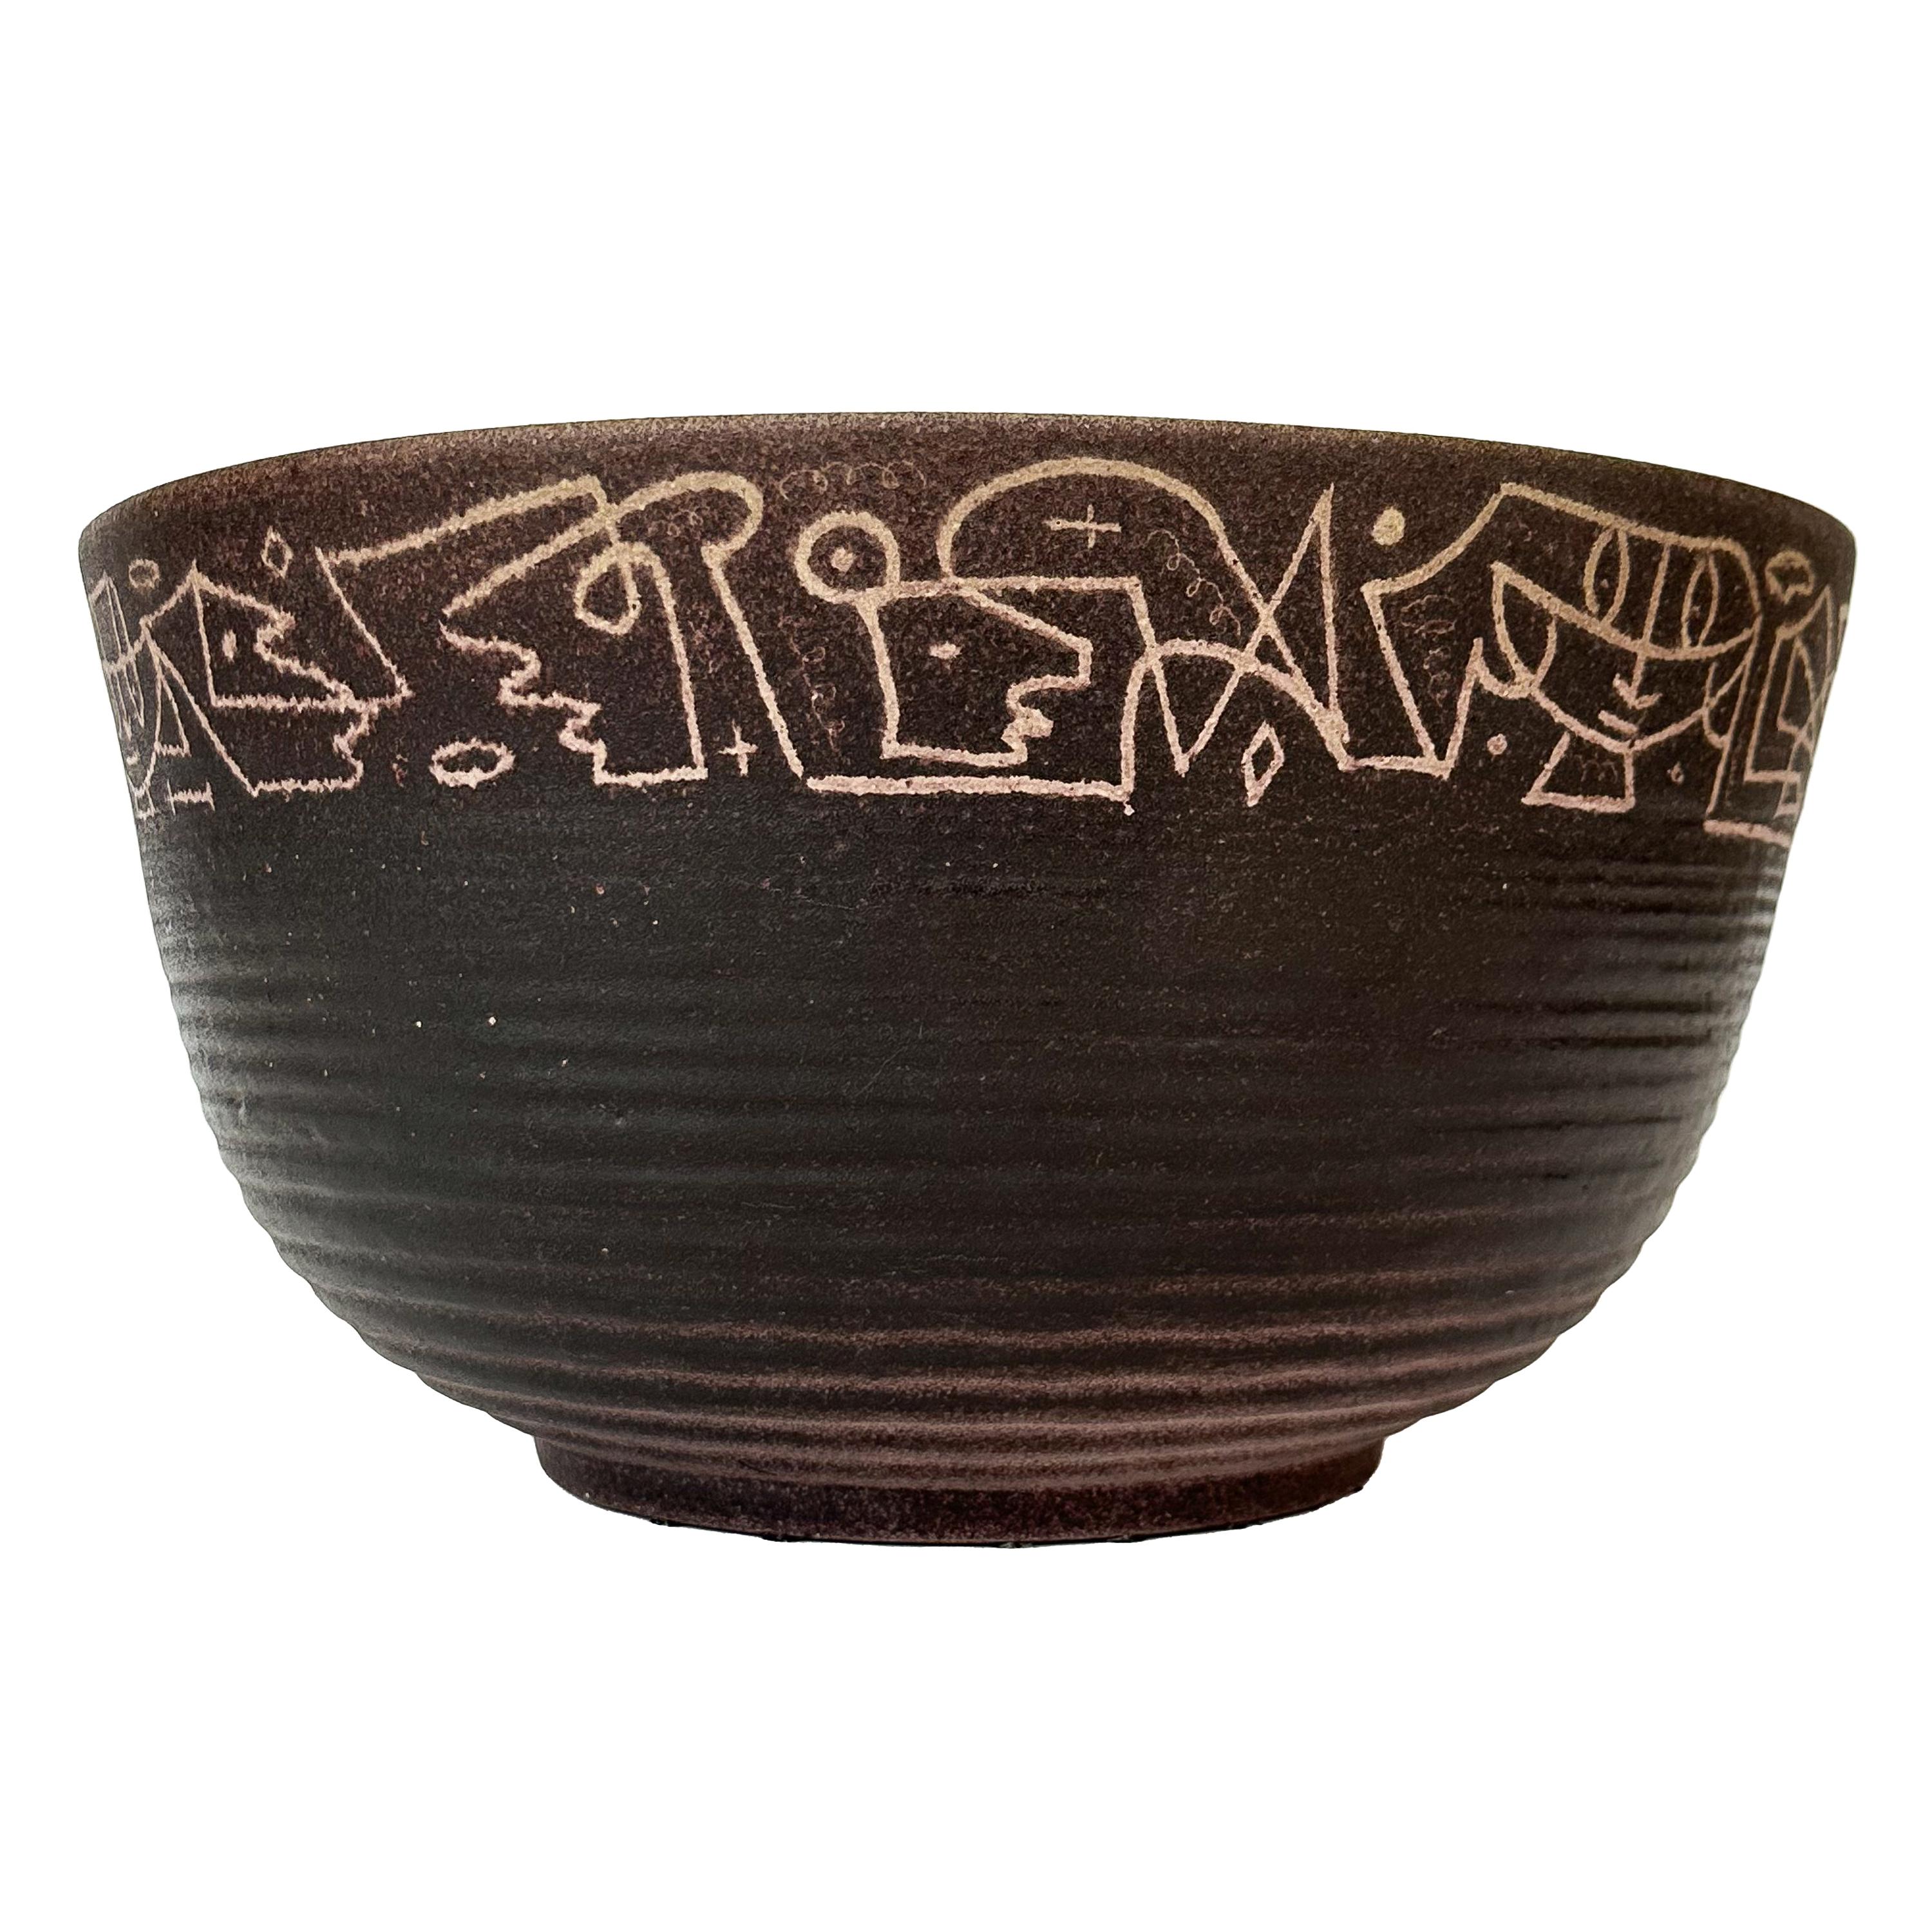 Cet exceptionnel bol en céramique en grès ancien est un chef-d'œuvre intemporel des célèbres potiers américains Edwin et Mary Scheier. Artistics dans les années 1950, il illustre le mélange unique de forme, de fonction et de narration